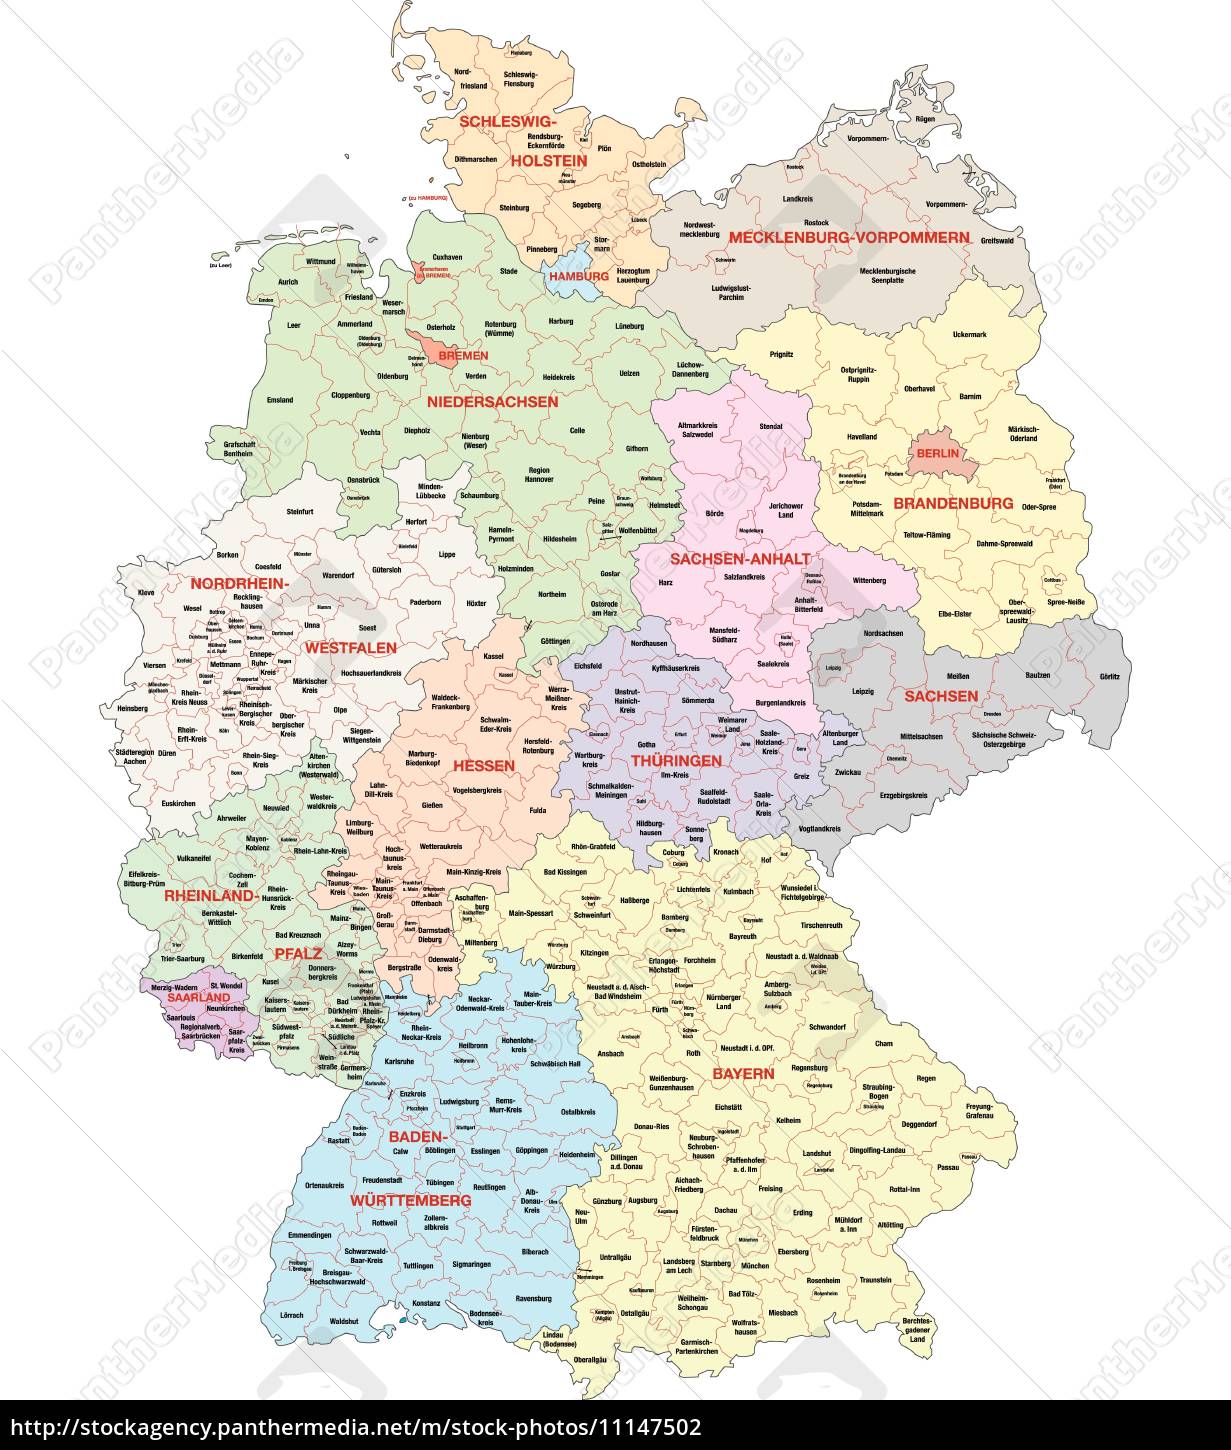 Kort Over Sydtyskland administrativ kort over tyskland   Stockphoto   #11147502  Kort Over Sydtyskland